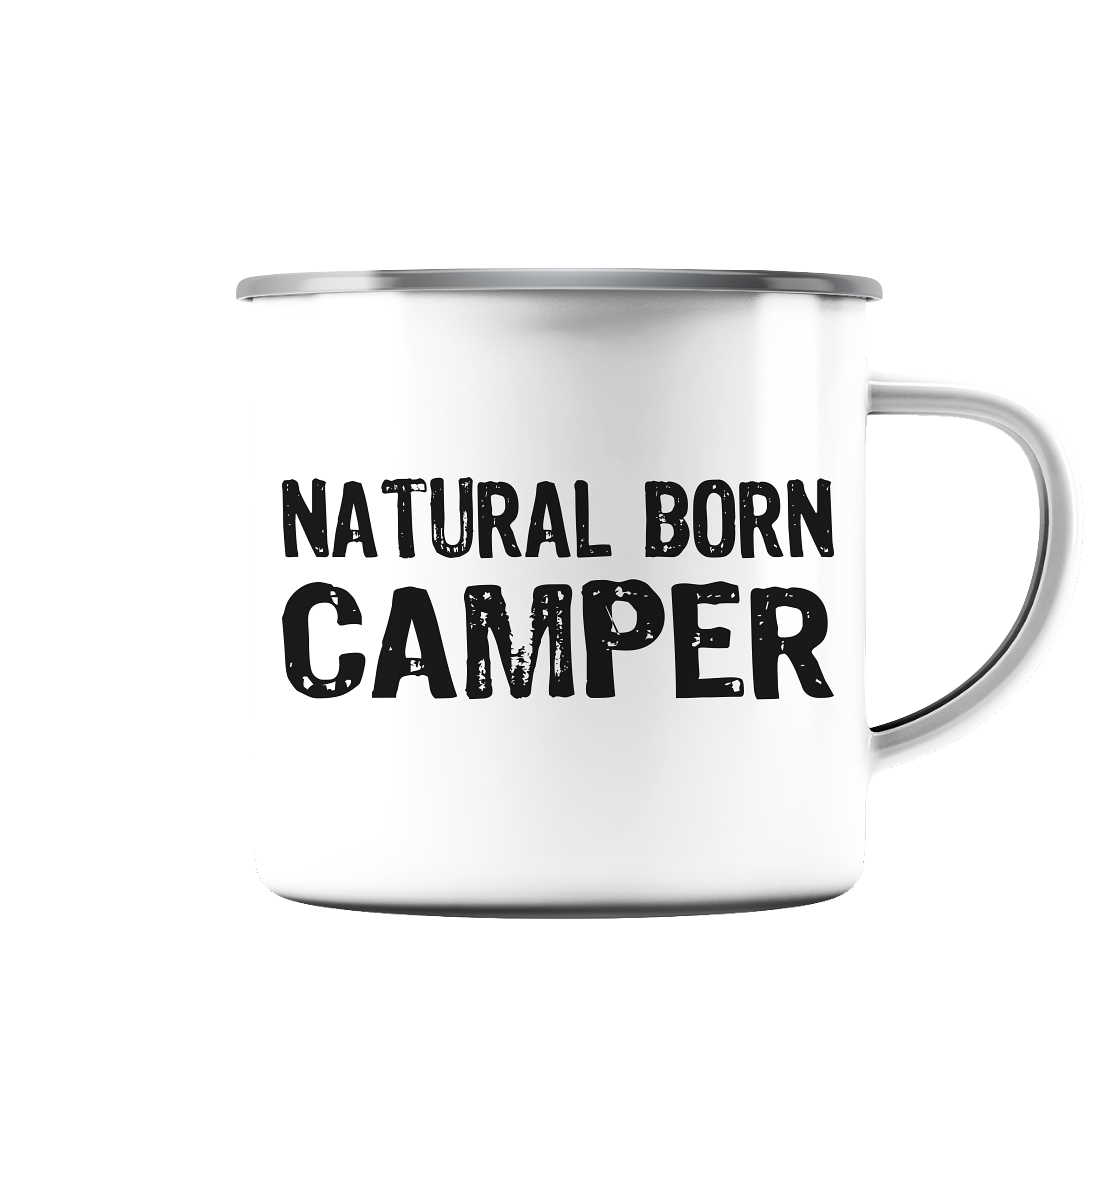 Natural Born Camper - Emaille Tasse (Silber)